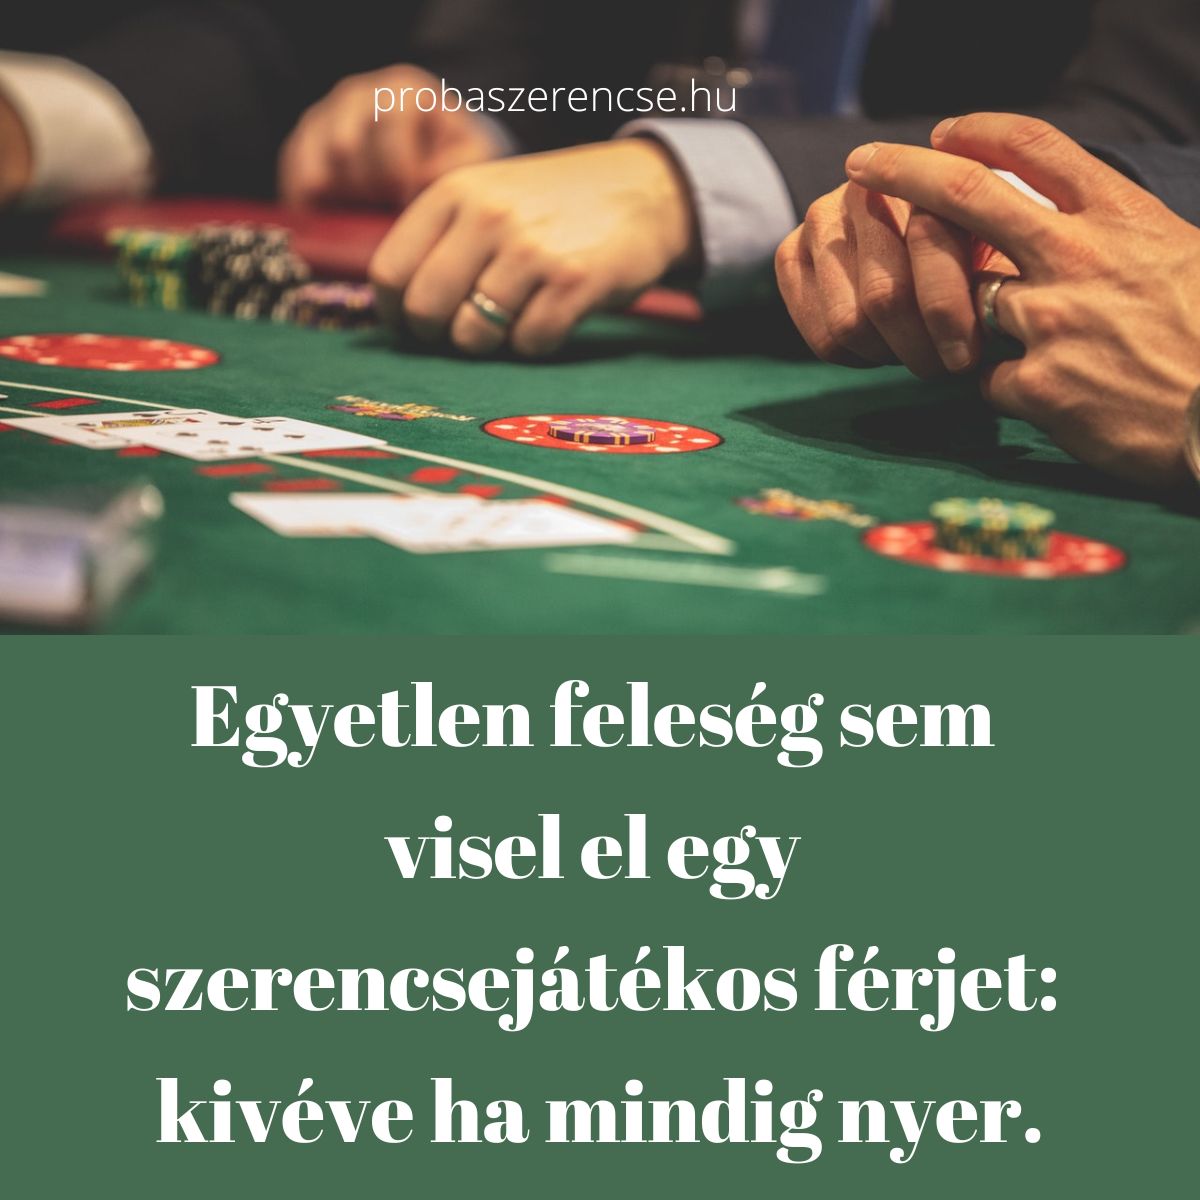 szerencsejáték idézet férj